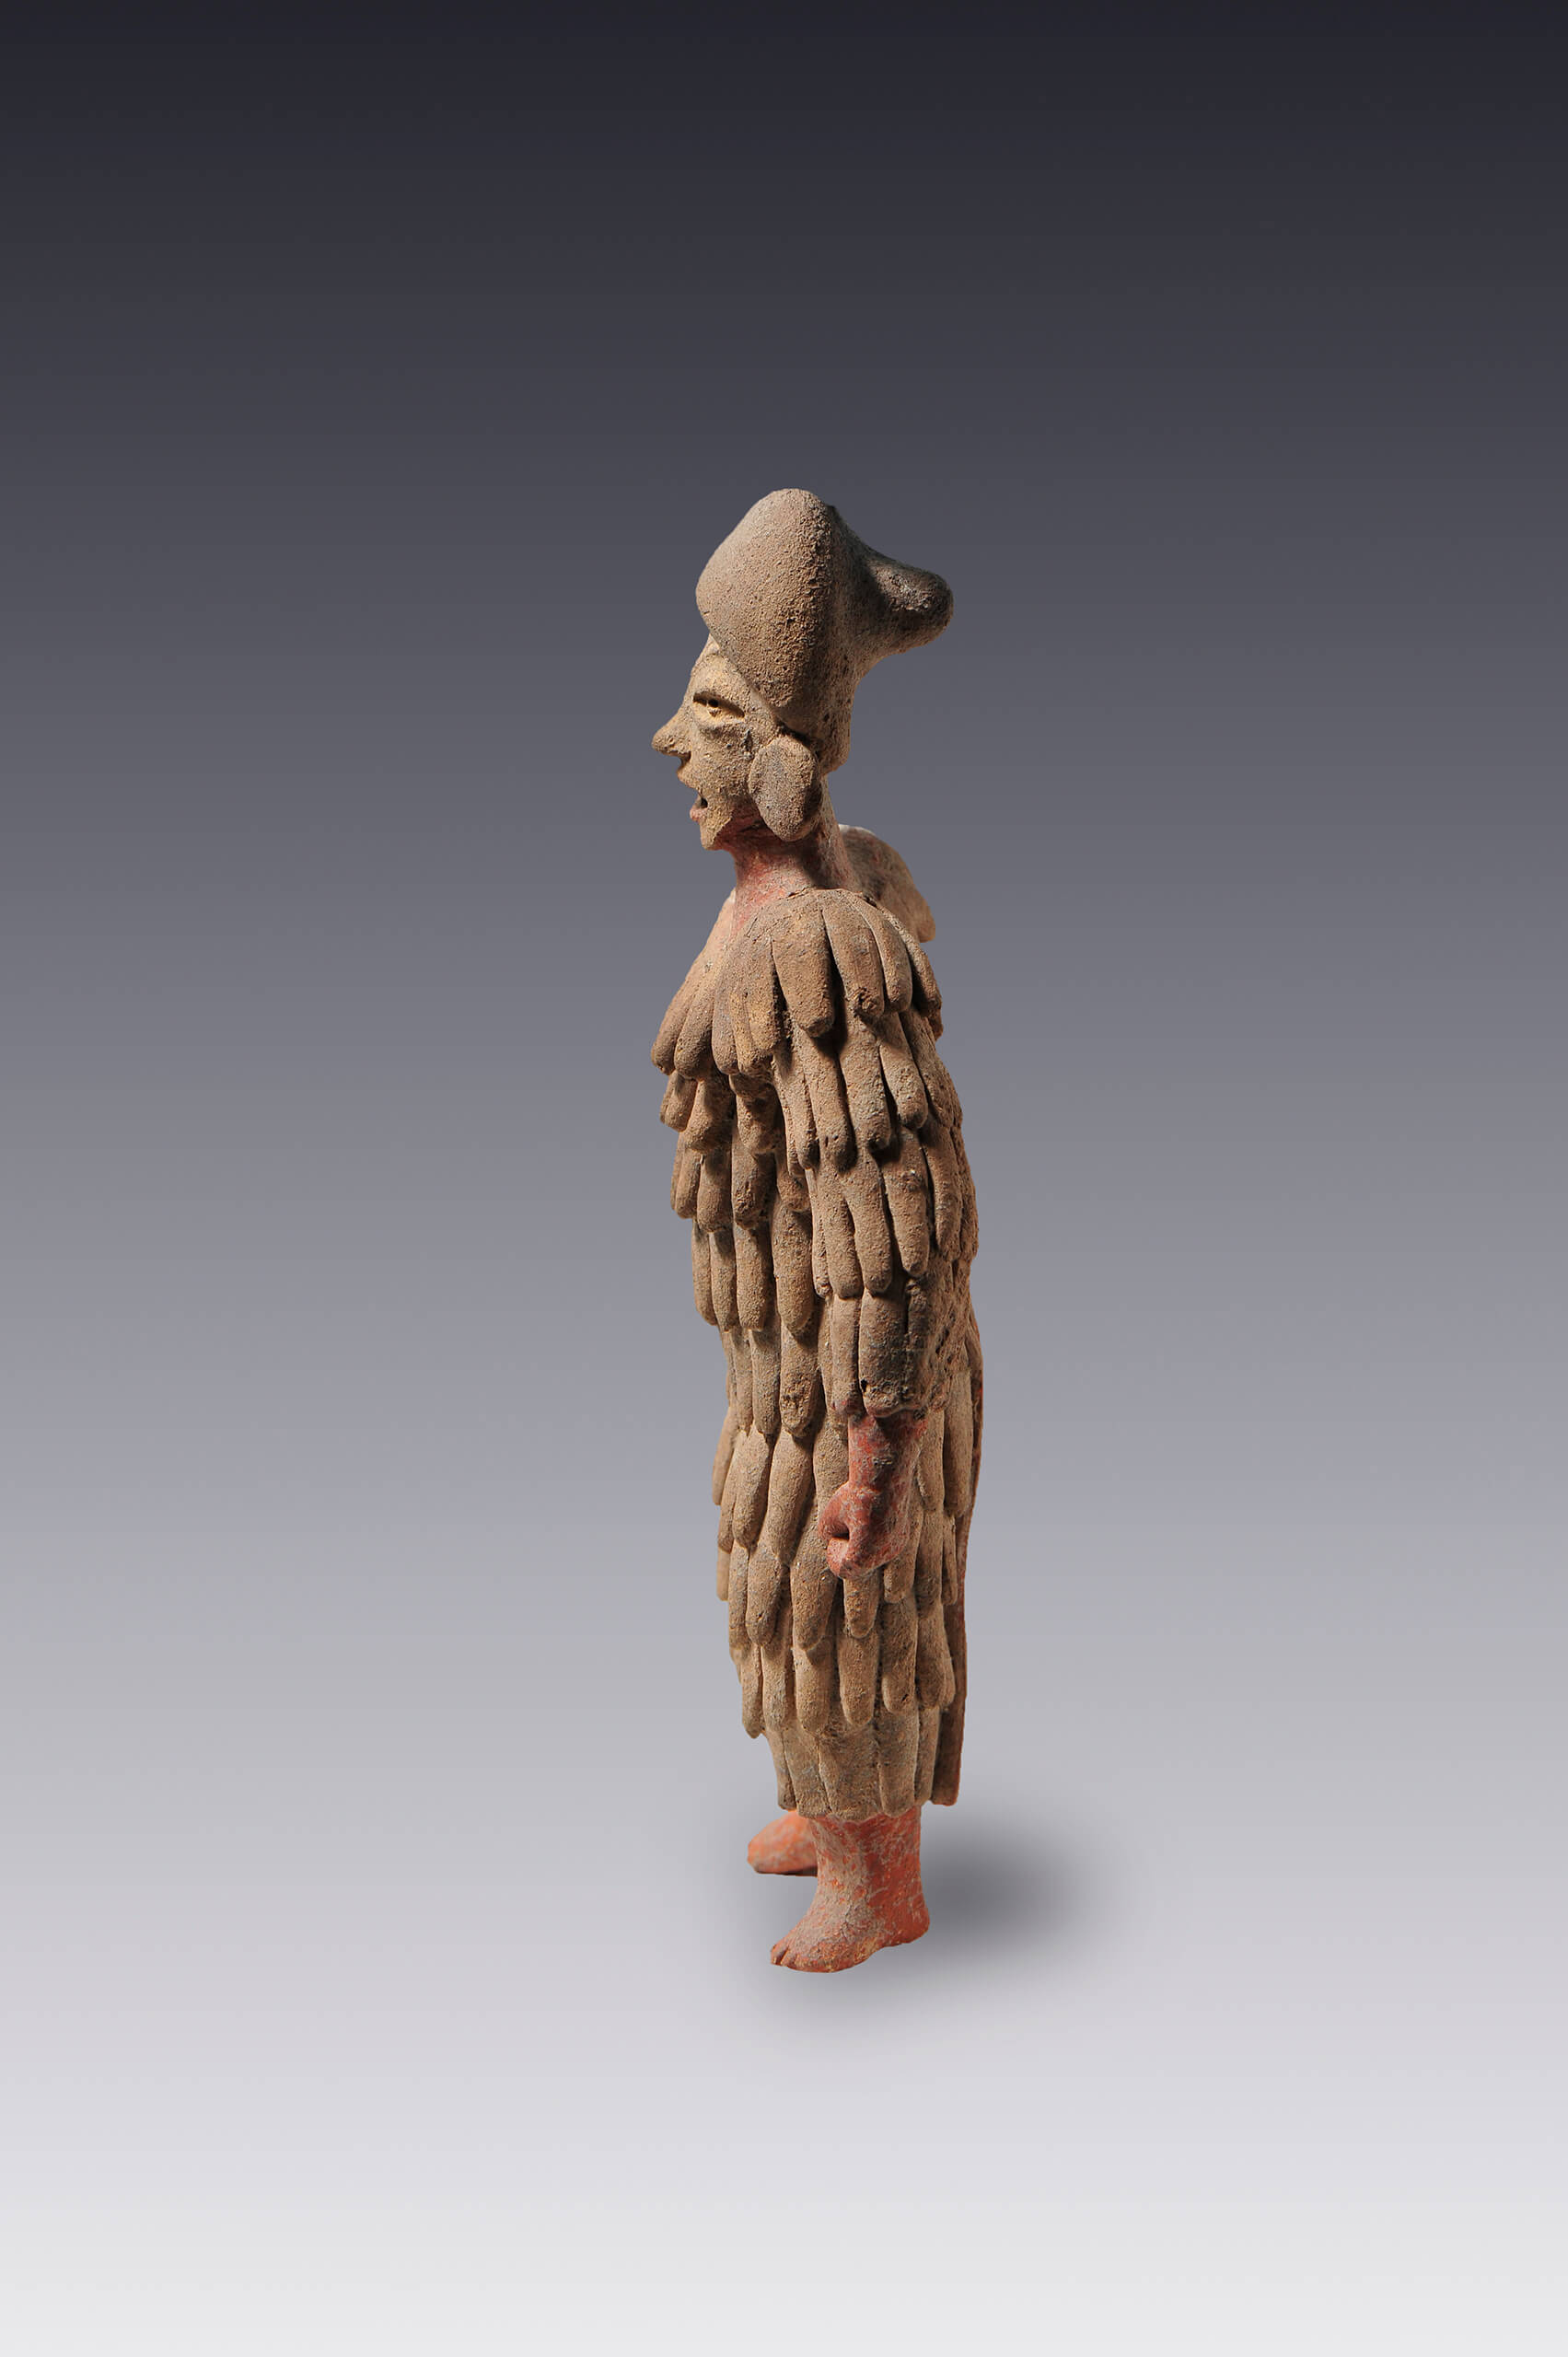 Hombre con atuendo de plumas | El México antiguo. Salas de Arte Prehispánico | Museo Amparo, Puebla